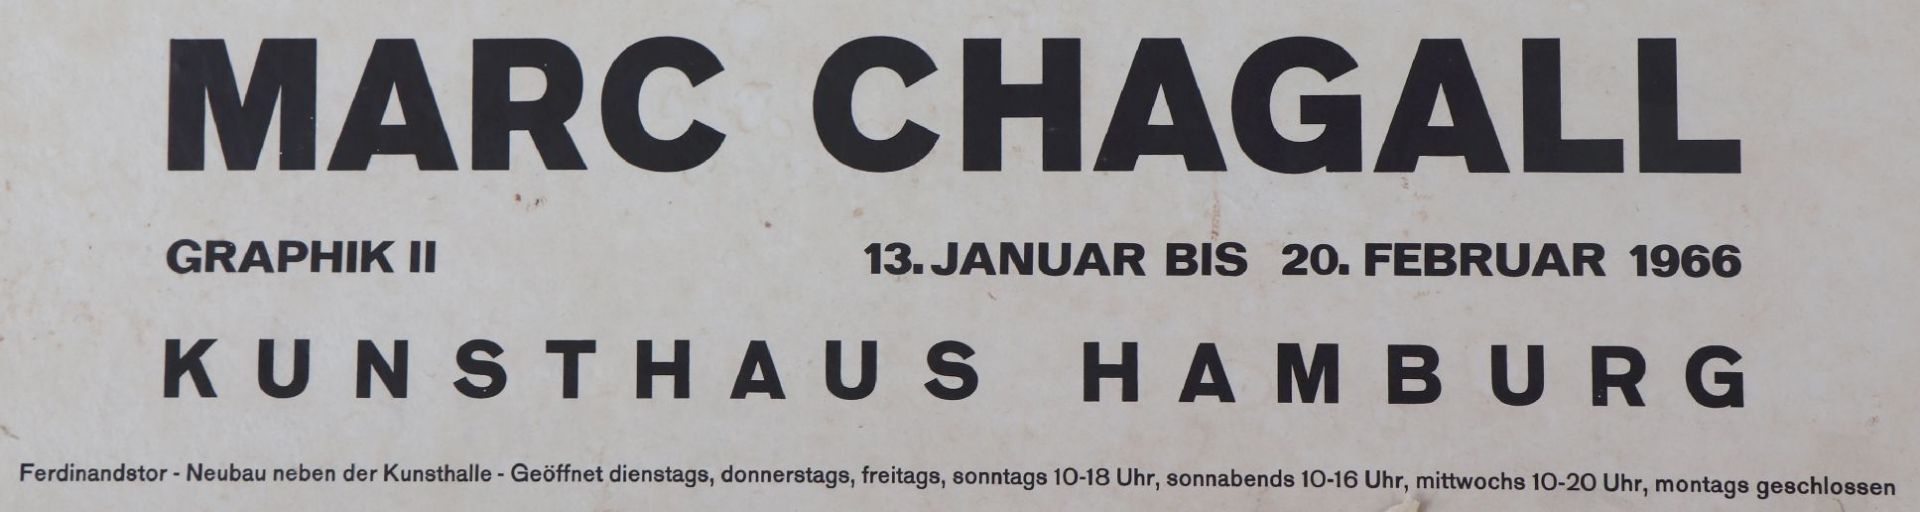 MARC CHAGALL (1887 Peskowatik bei Witebsk - 1985 Saint-Paul-de-Vence)Ausstellungsplakat ( - Bild 2 aus 5